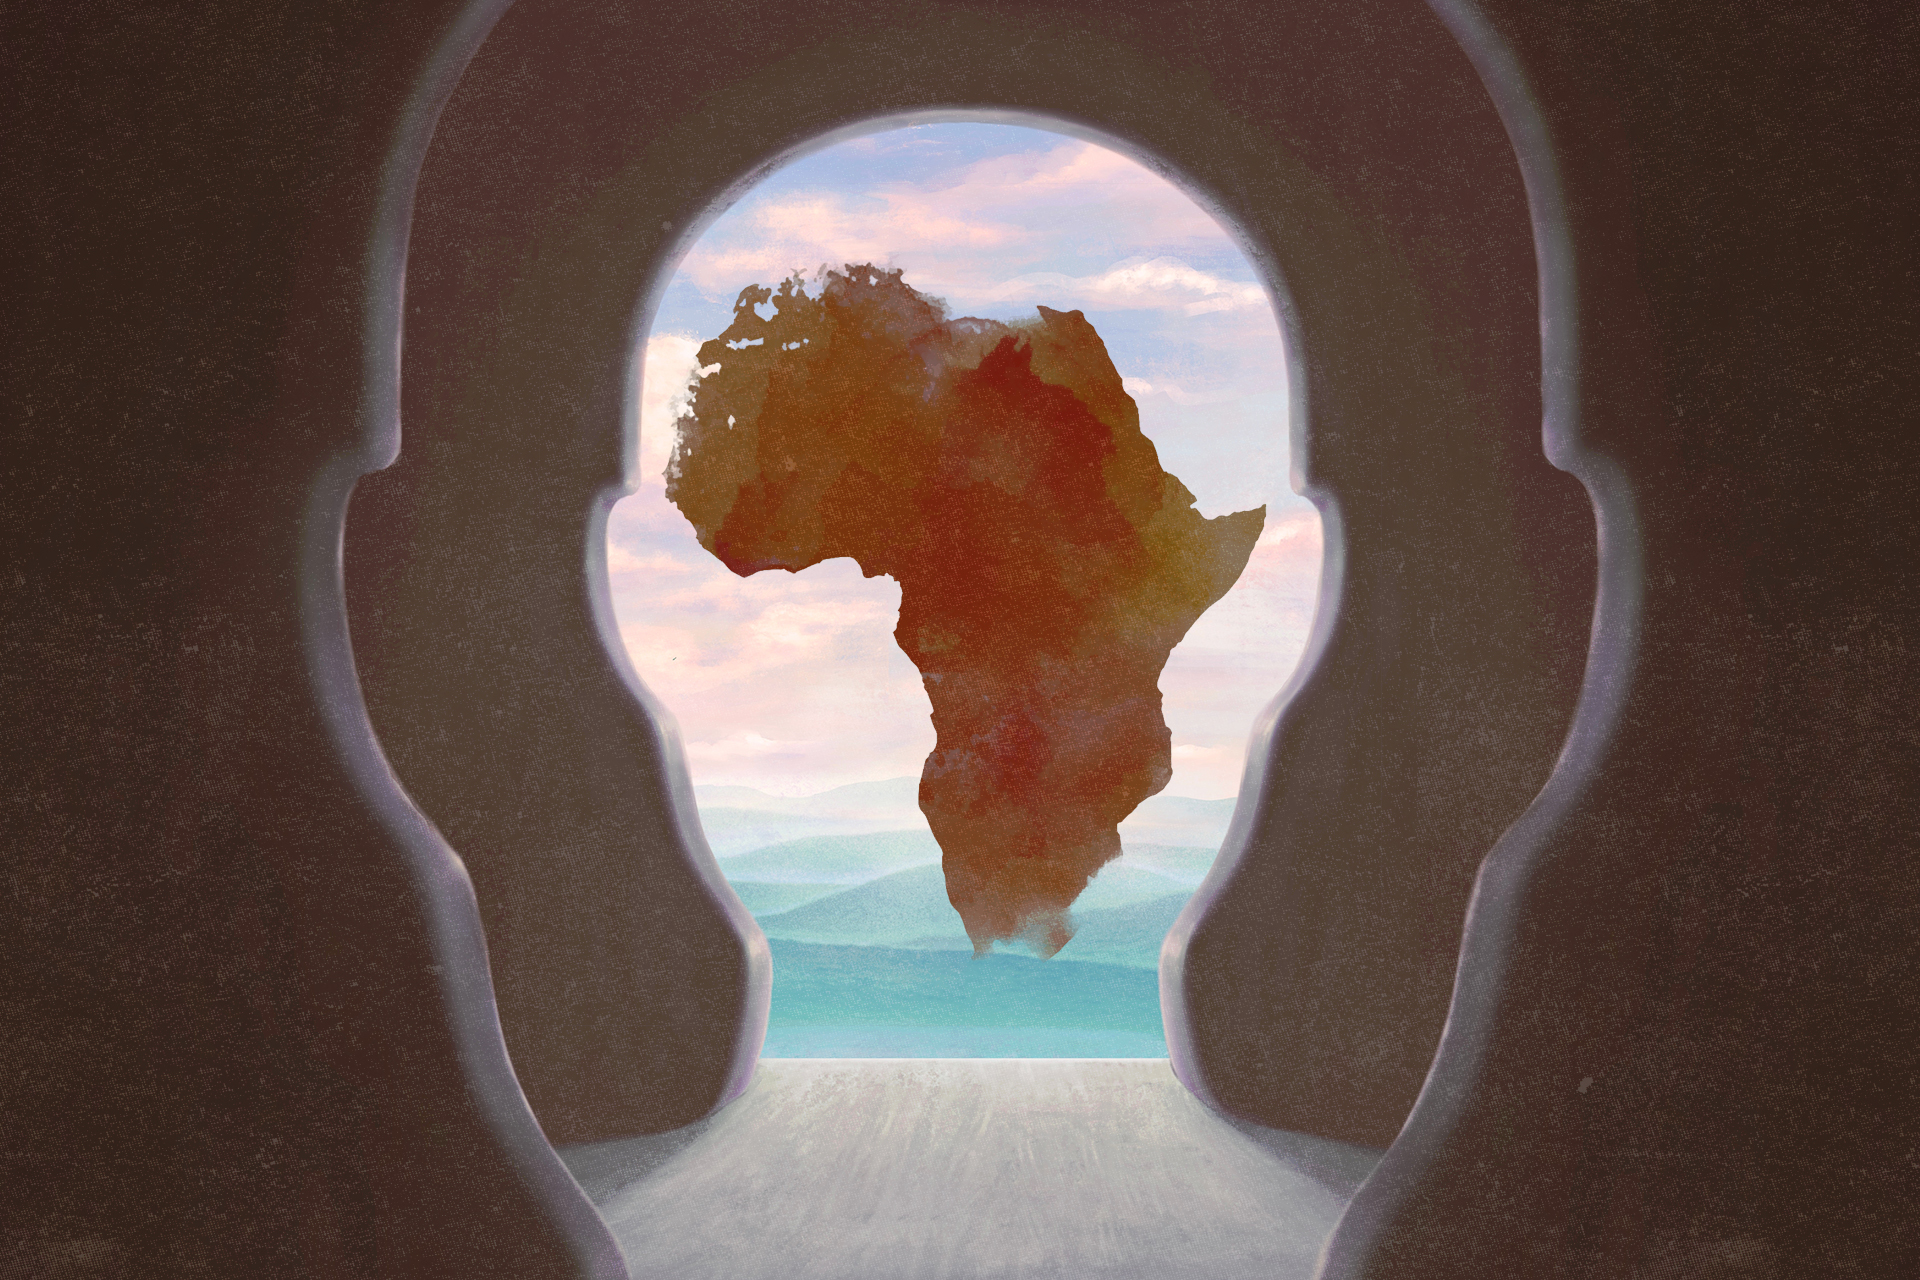 أوبونتو ومونتو وأفروتوبيا.. تعرف على 9 مفاهيم فلسفية "صنعت في أفريقيا" | أخبار